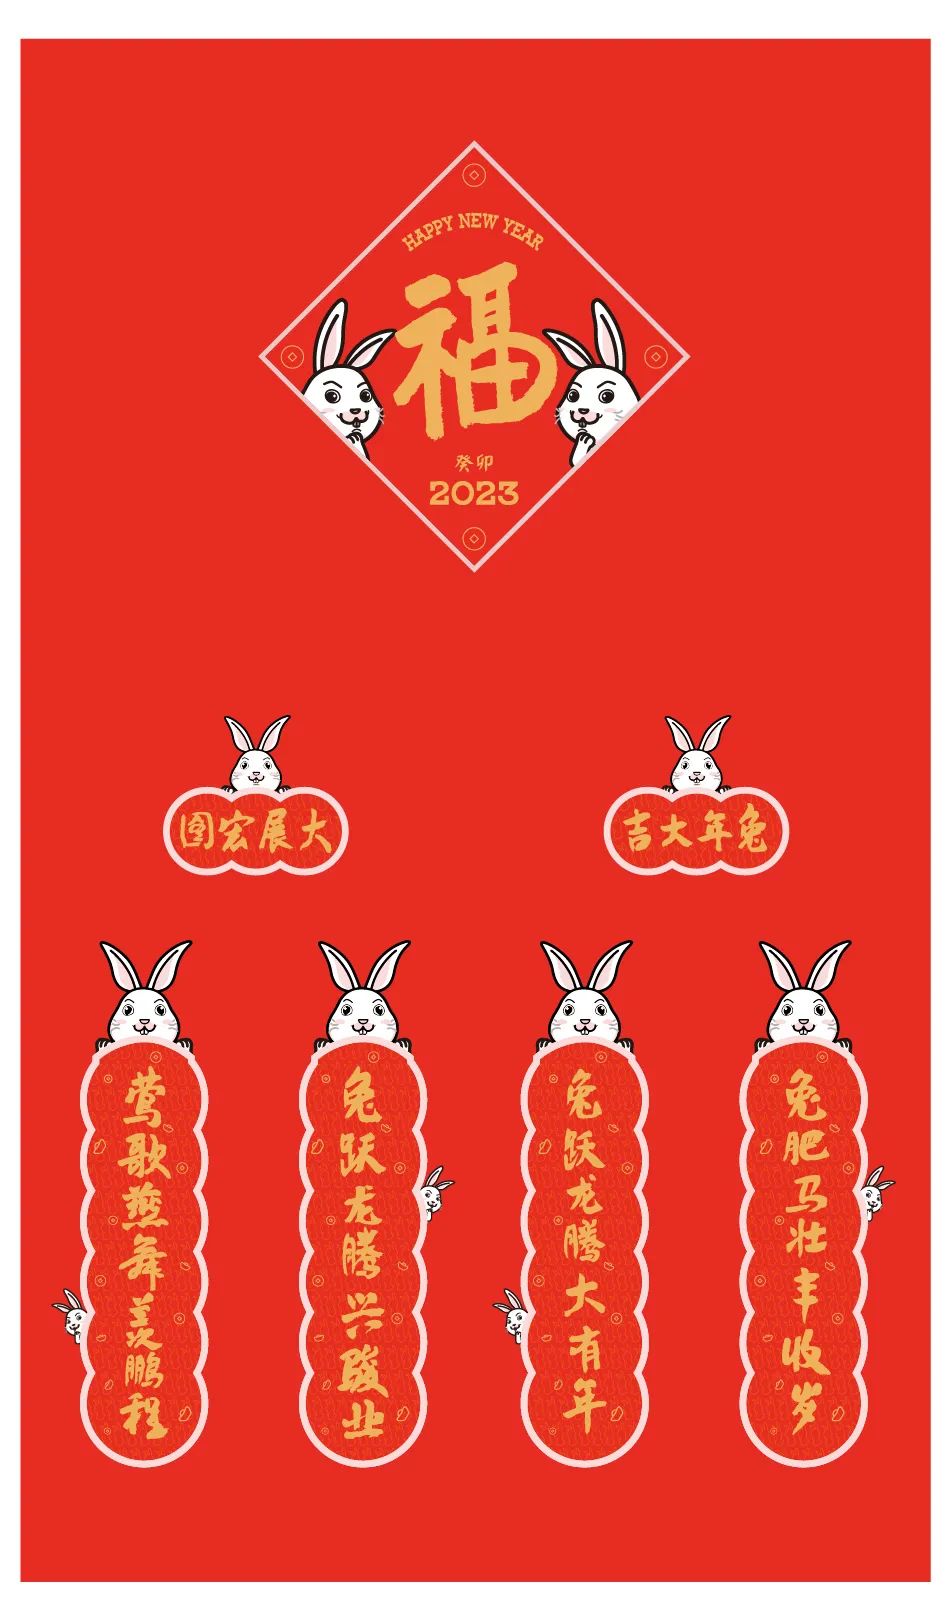 联手推出萌寳BOBOTU，著名画家陈湘波2023国风系列潮玩正在热售